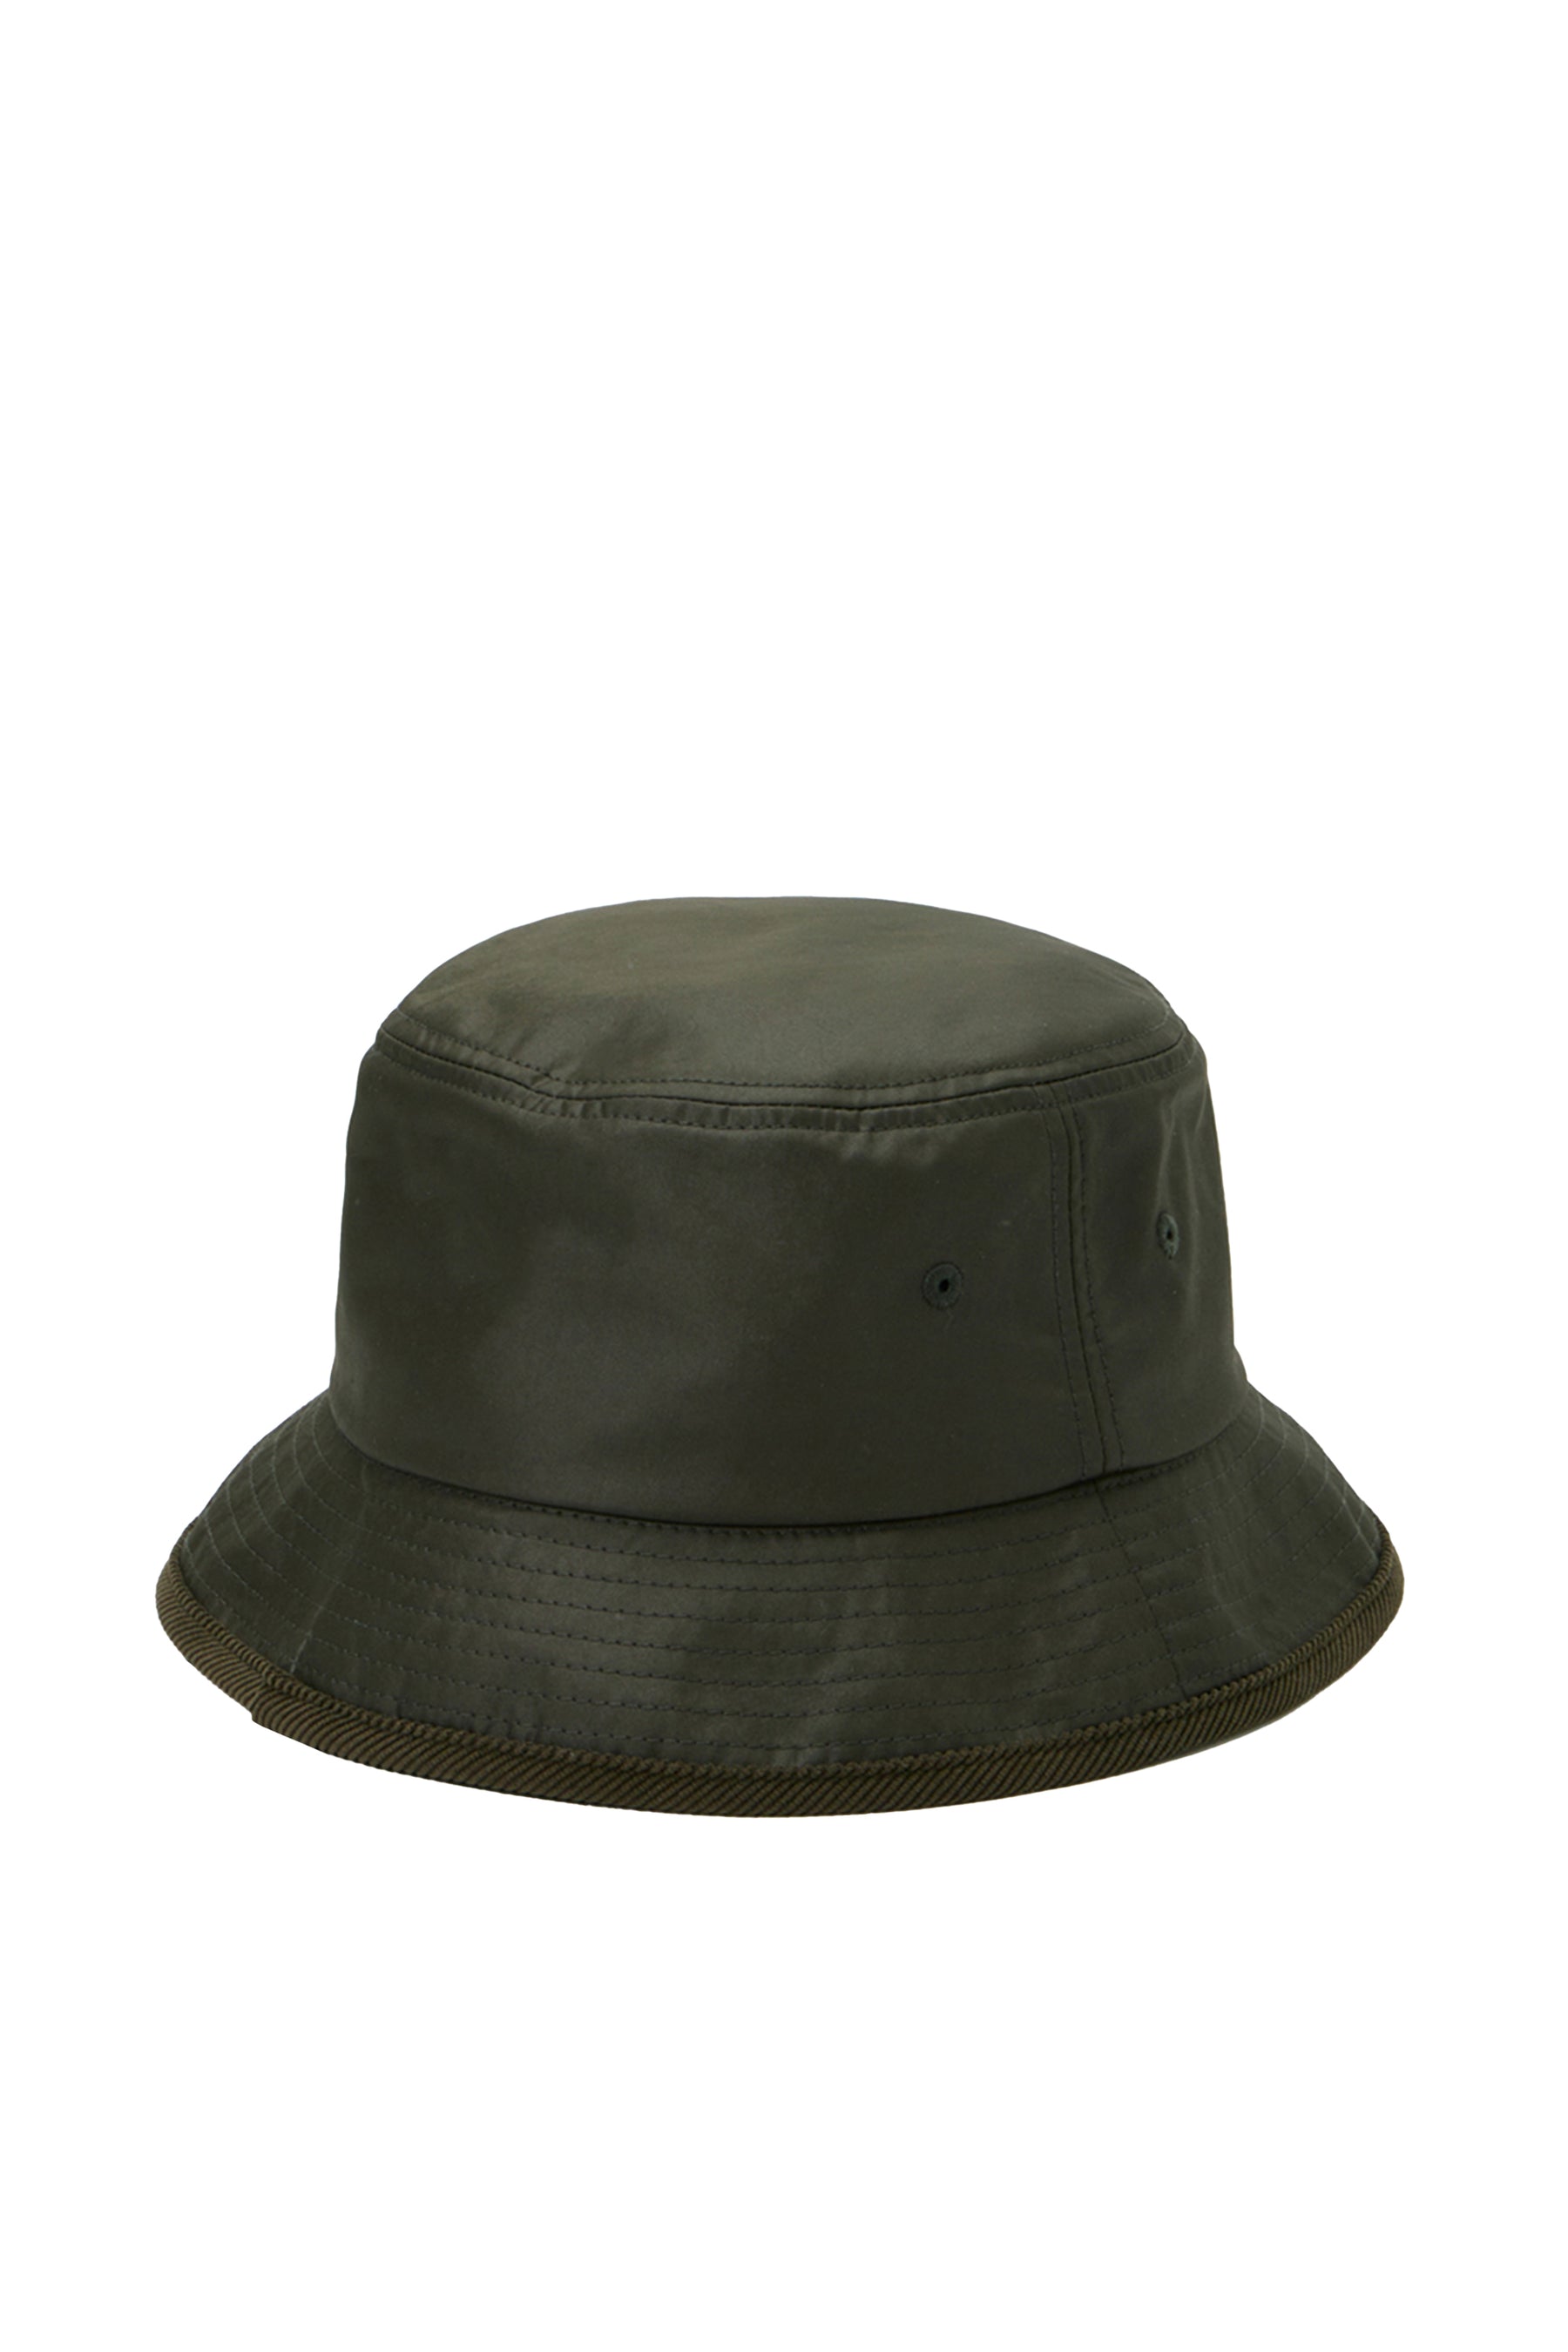 DAIWA PIER39 SS23 TECH HUNTER'S BUCKET HAT / D OLV -NUBIAN